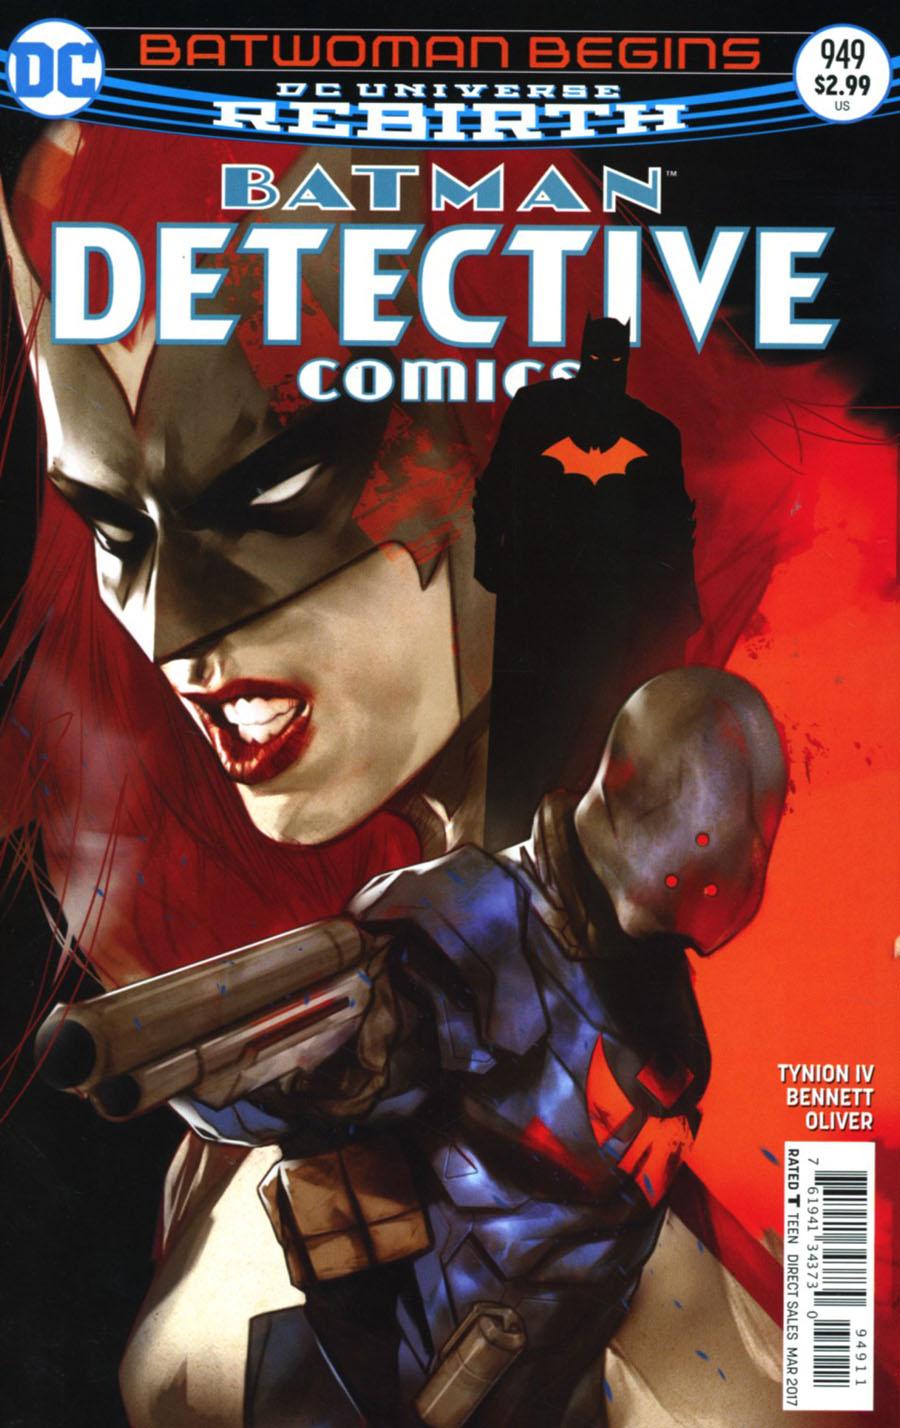 Detective Comics Vol. 2 #949